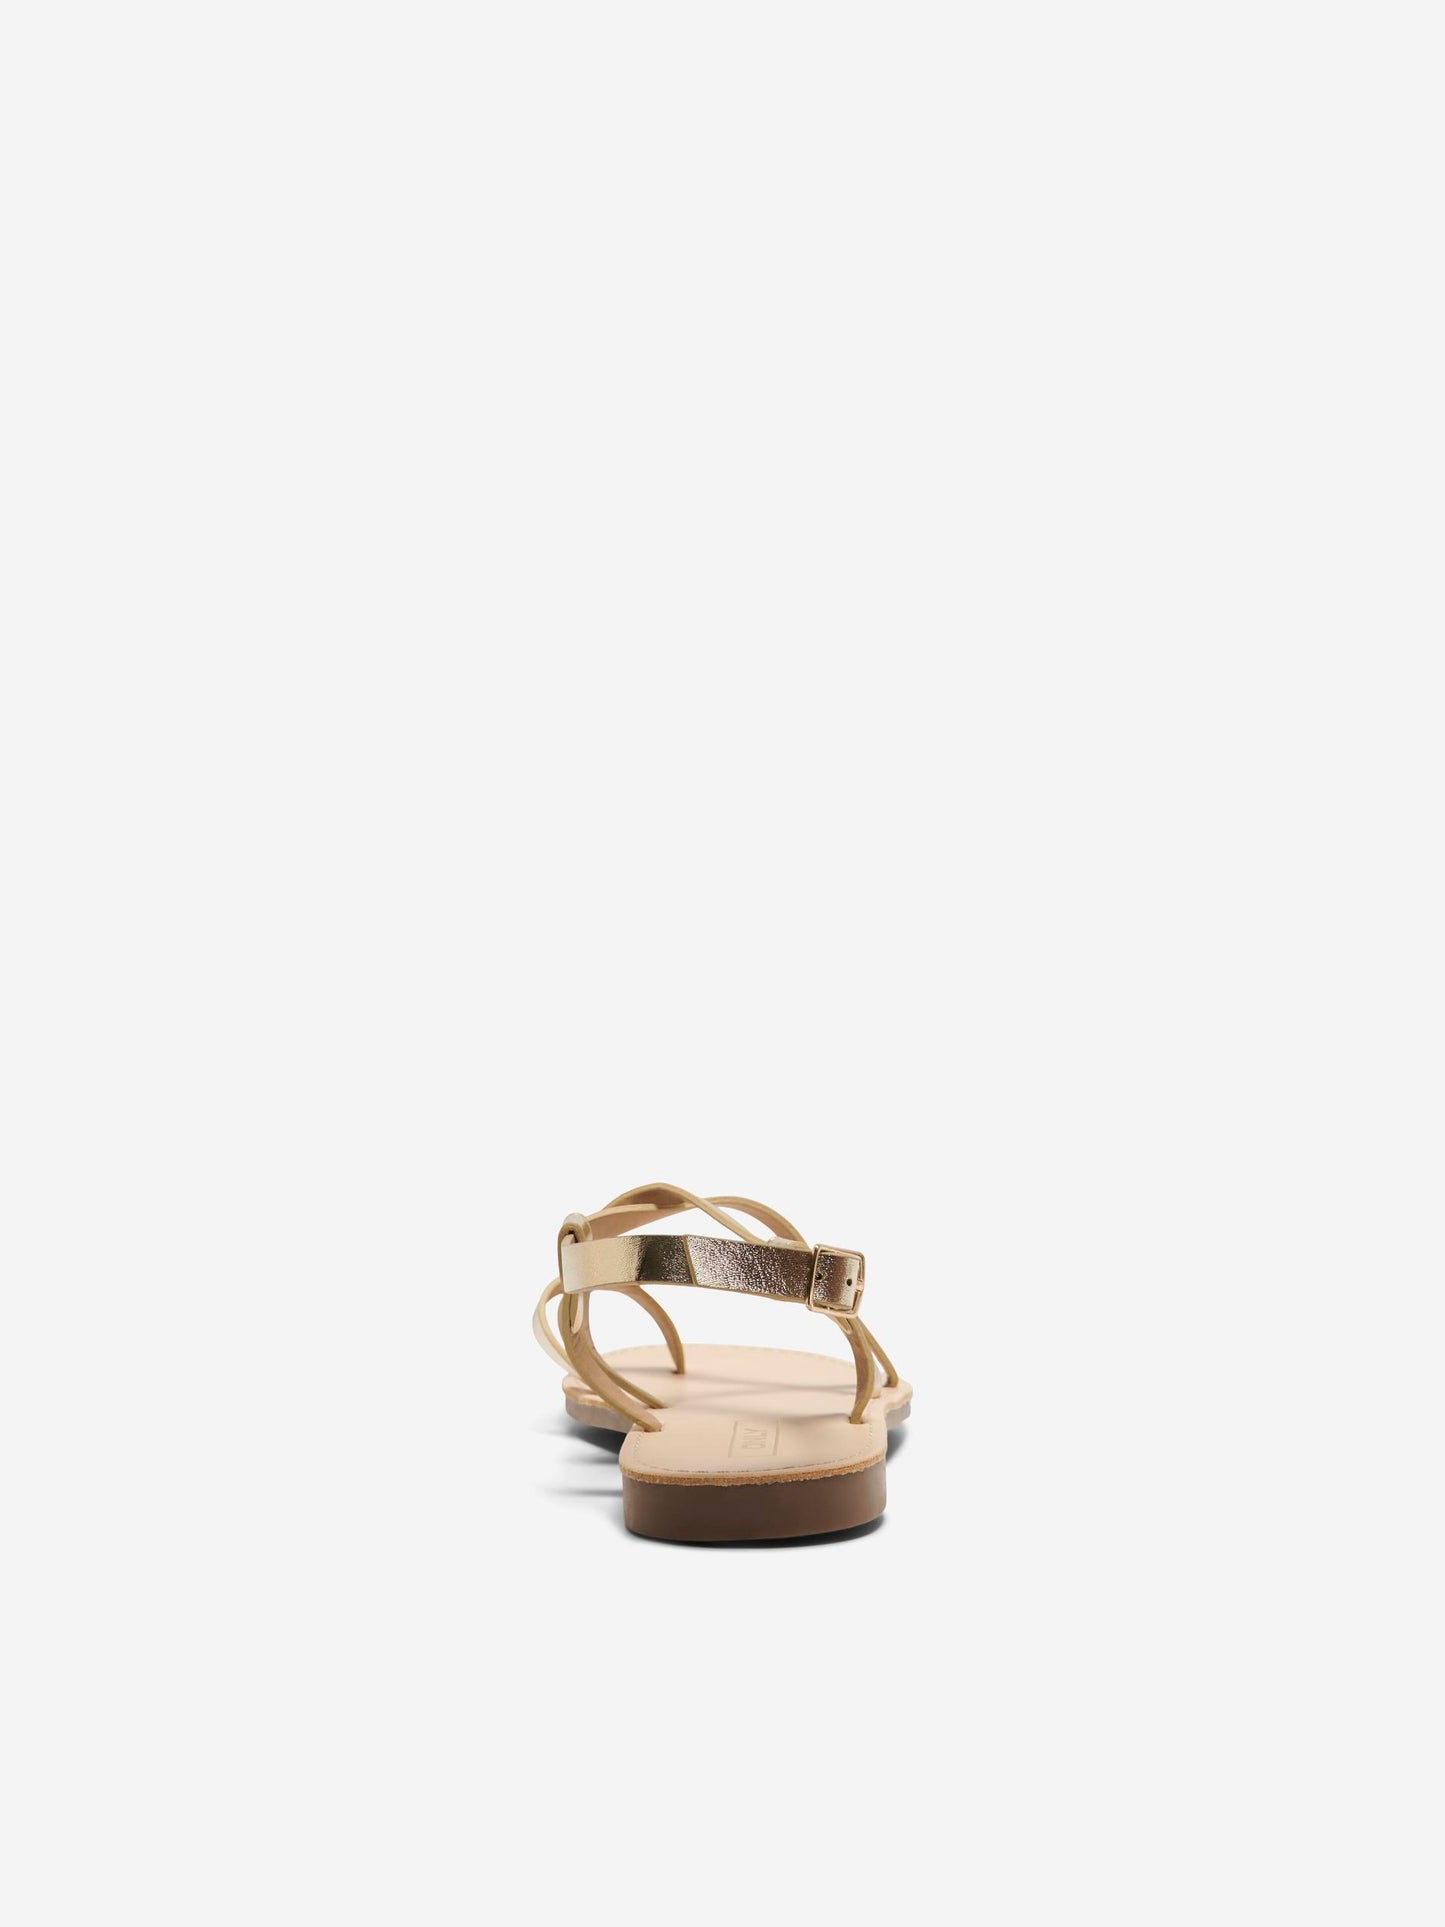 Mandala Foil Sandal - Gold